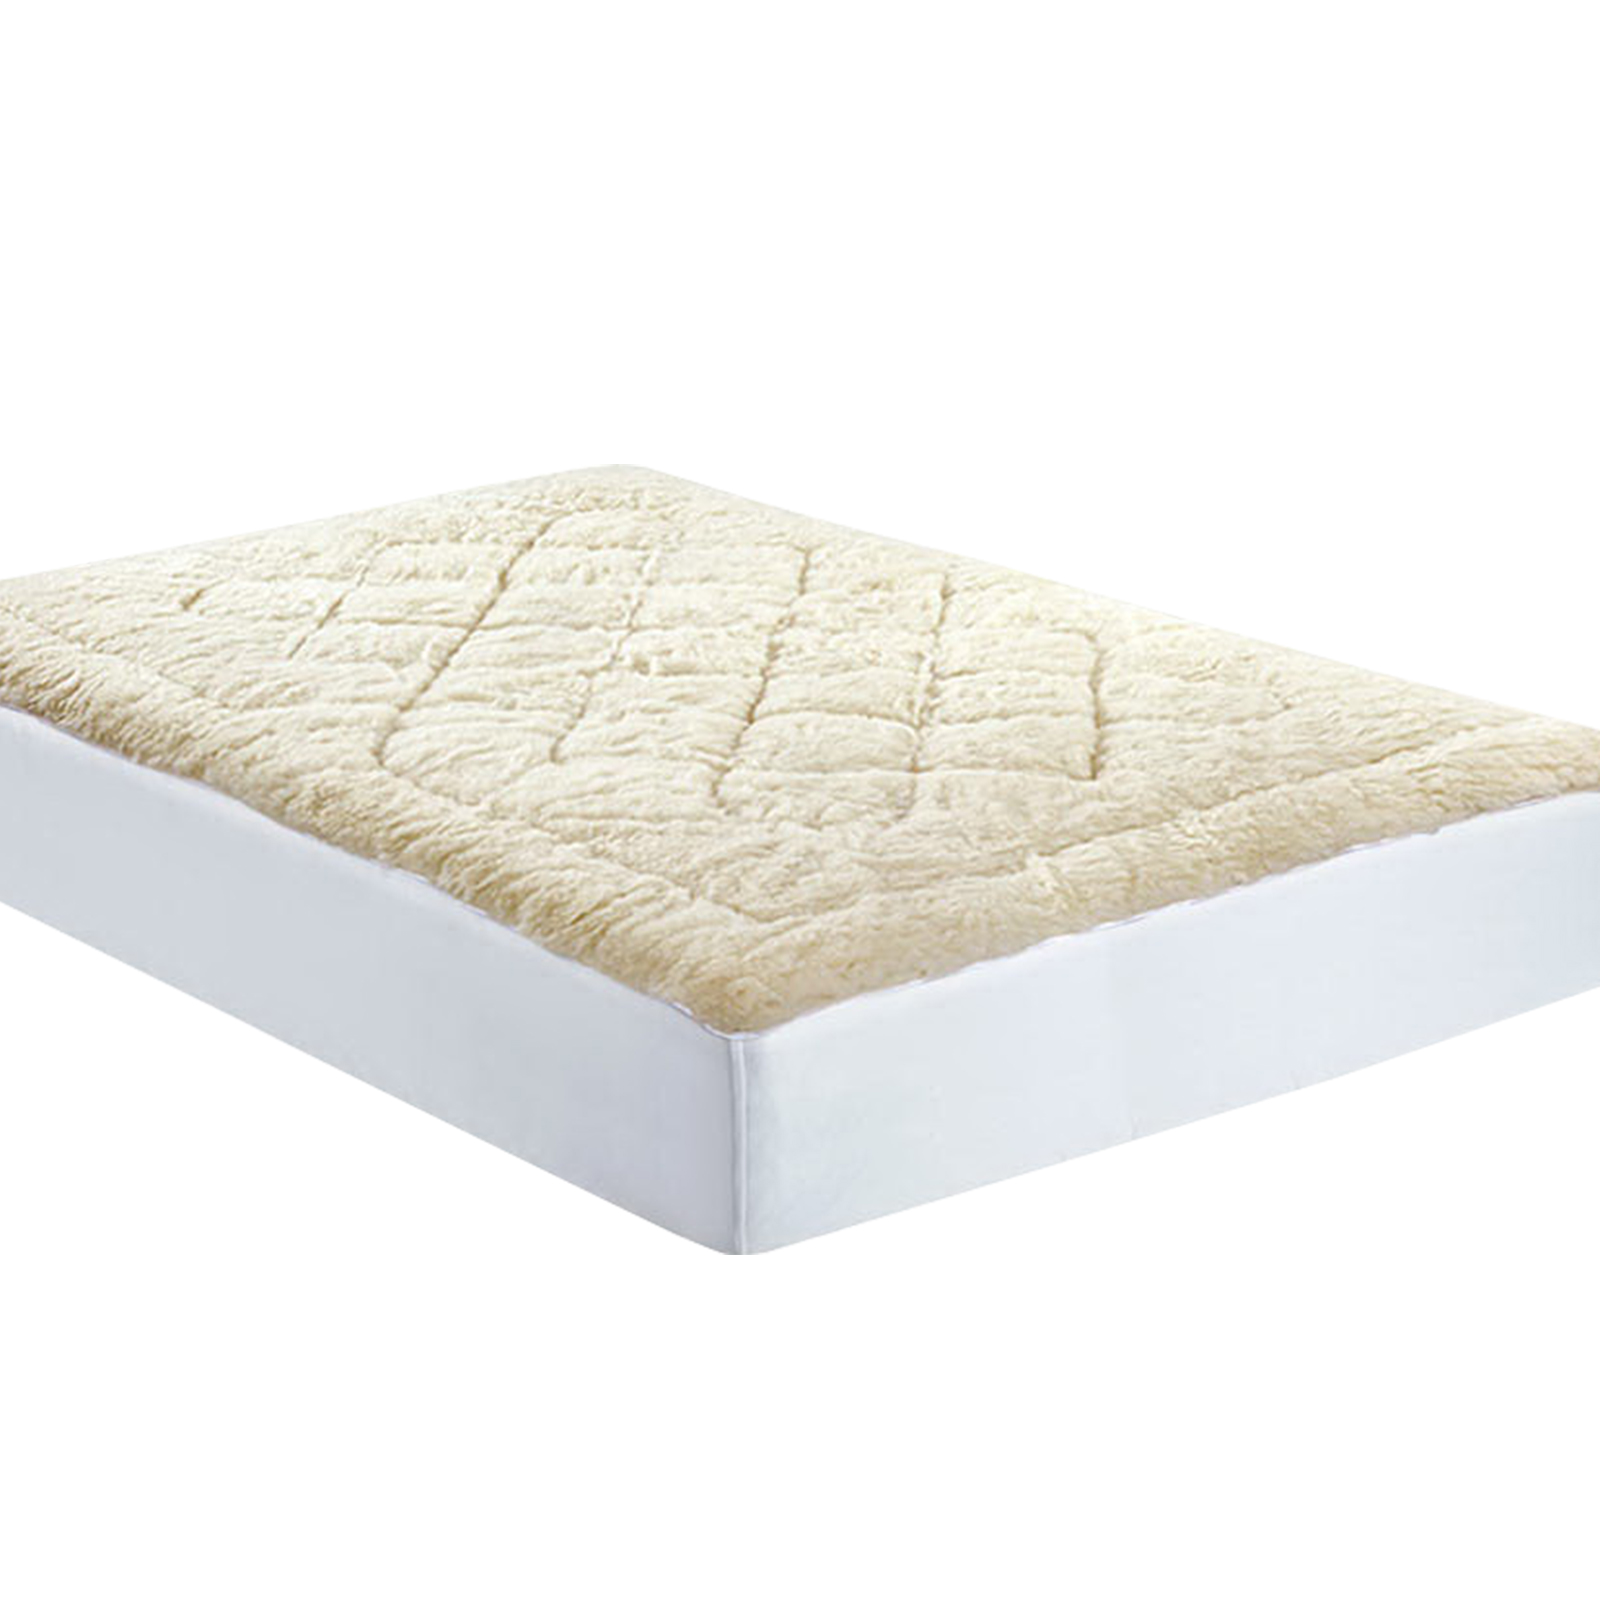 Queen Size Wool Underlay Mattress Bed Topper Underblanket Cotton - White